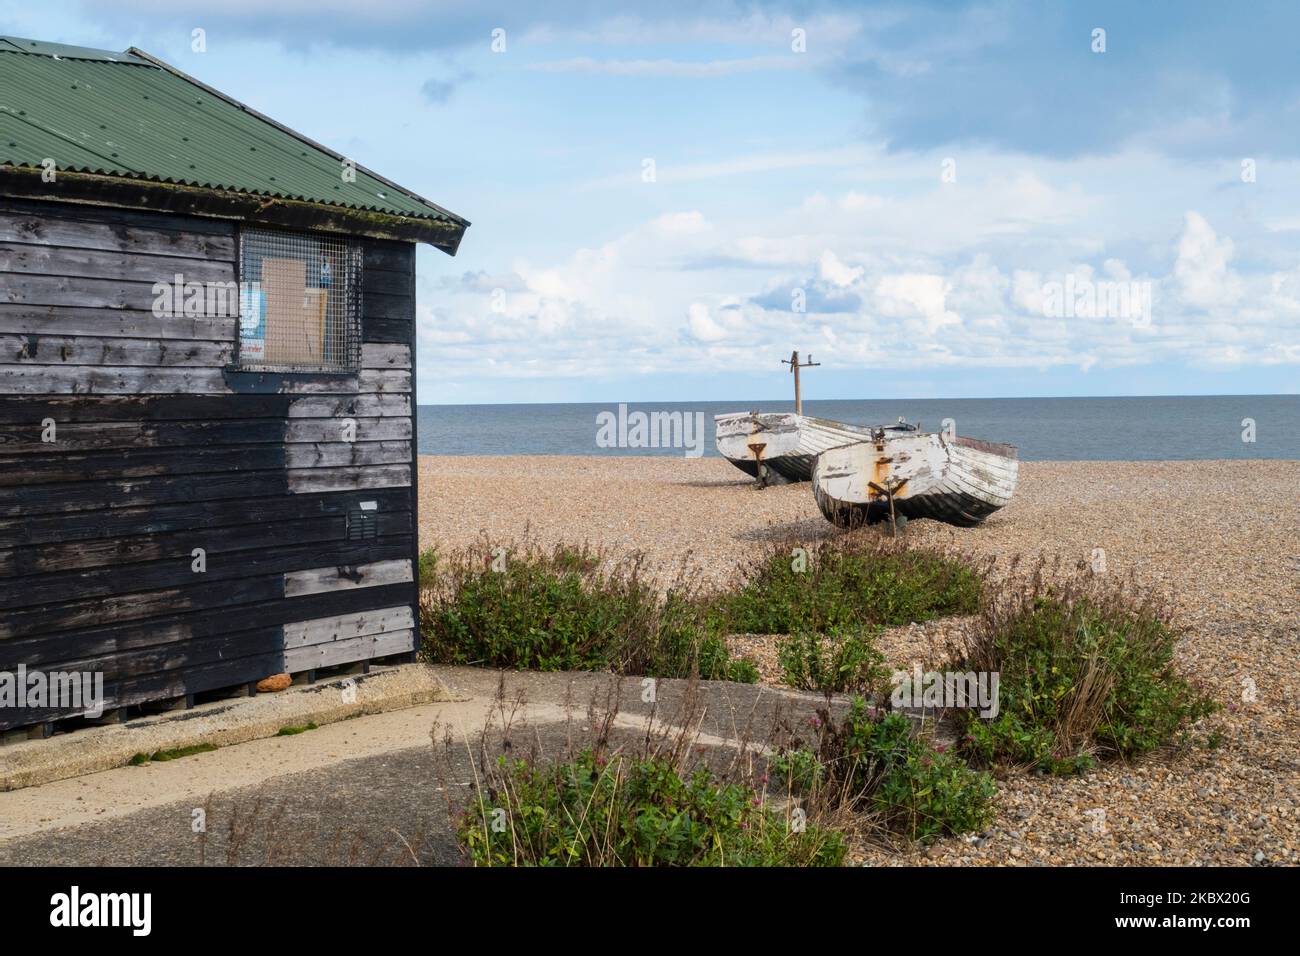 Plage de galets d'Aldeburgh avec bateaux Suffolk Angleterre Royaume-Uni Banque D'Images